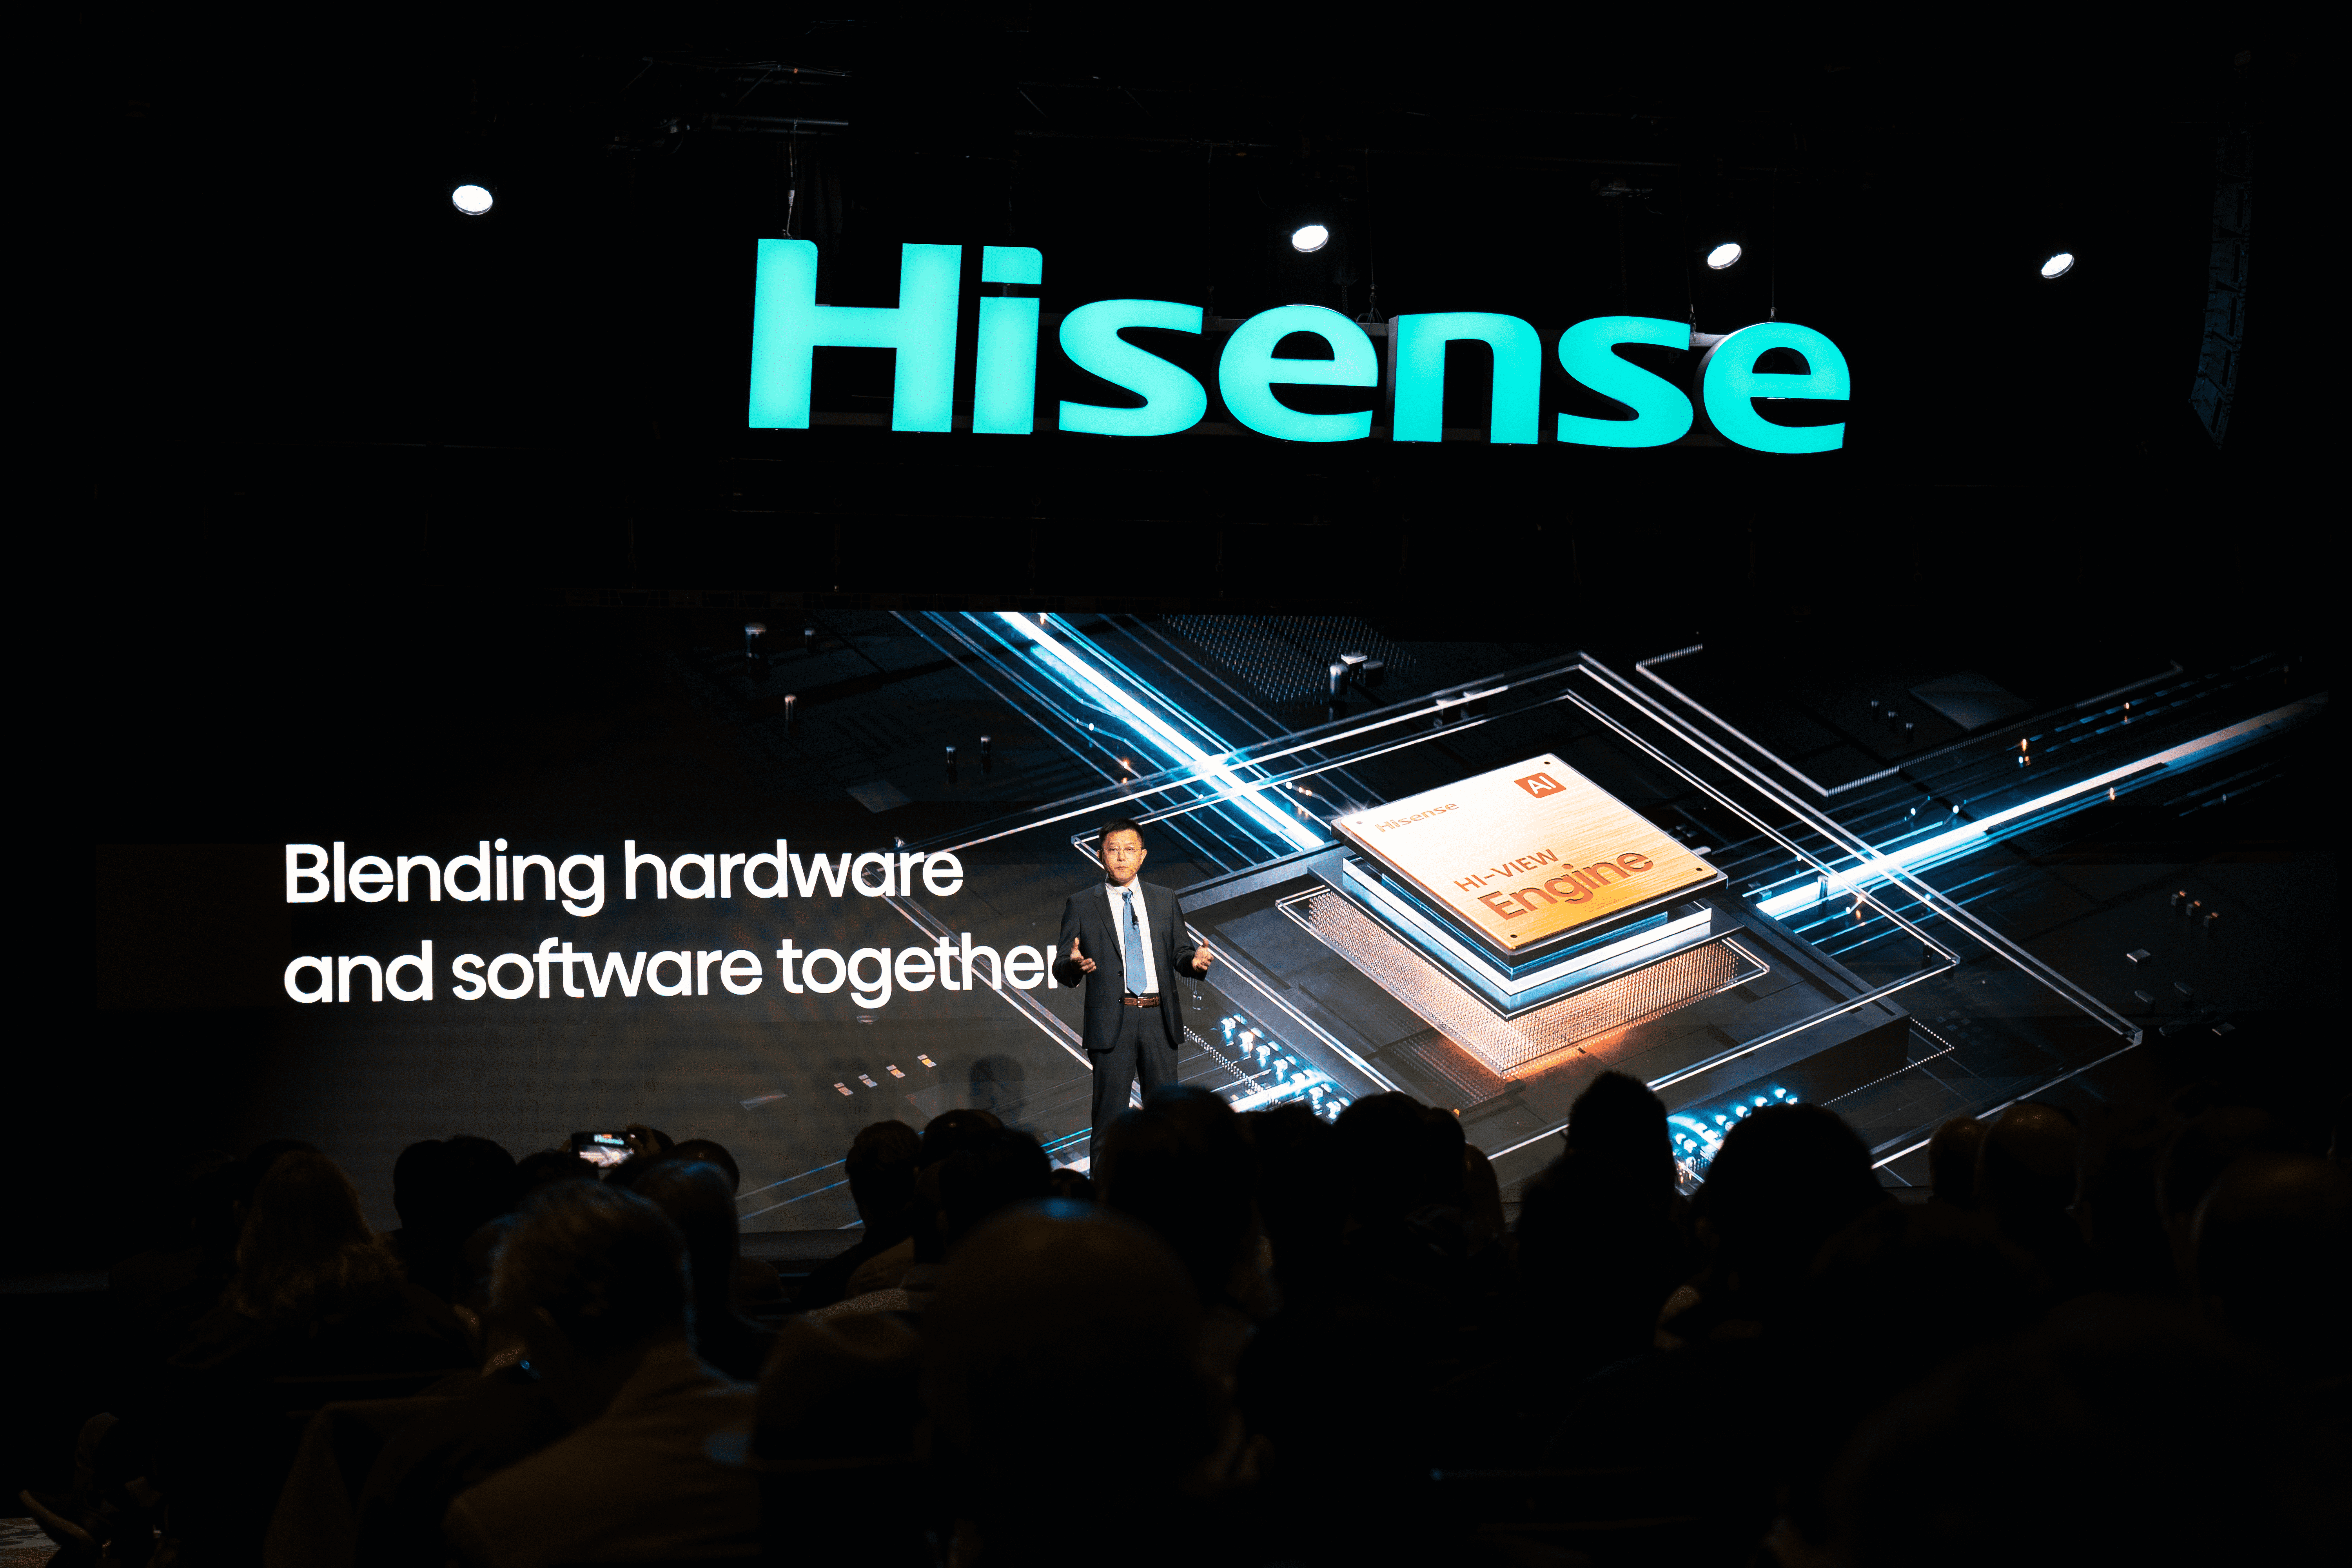 hisense_ces_6_optimized-2.png